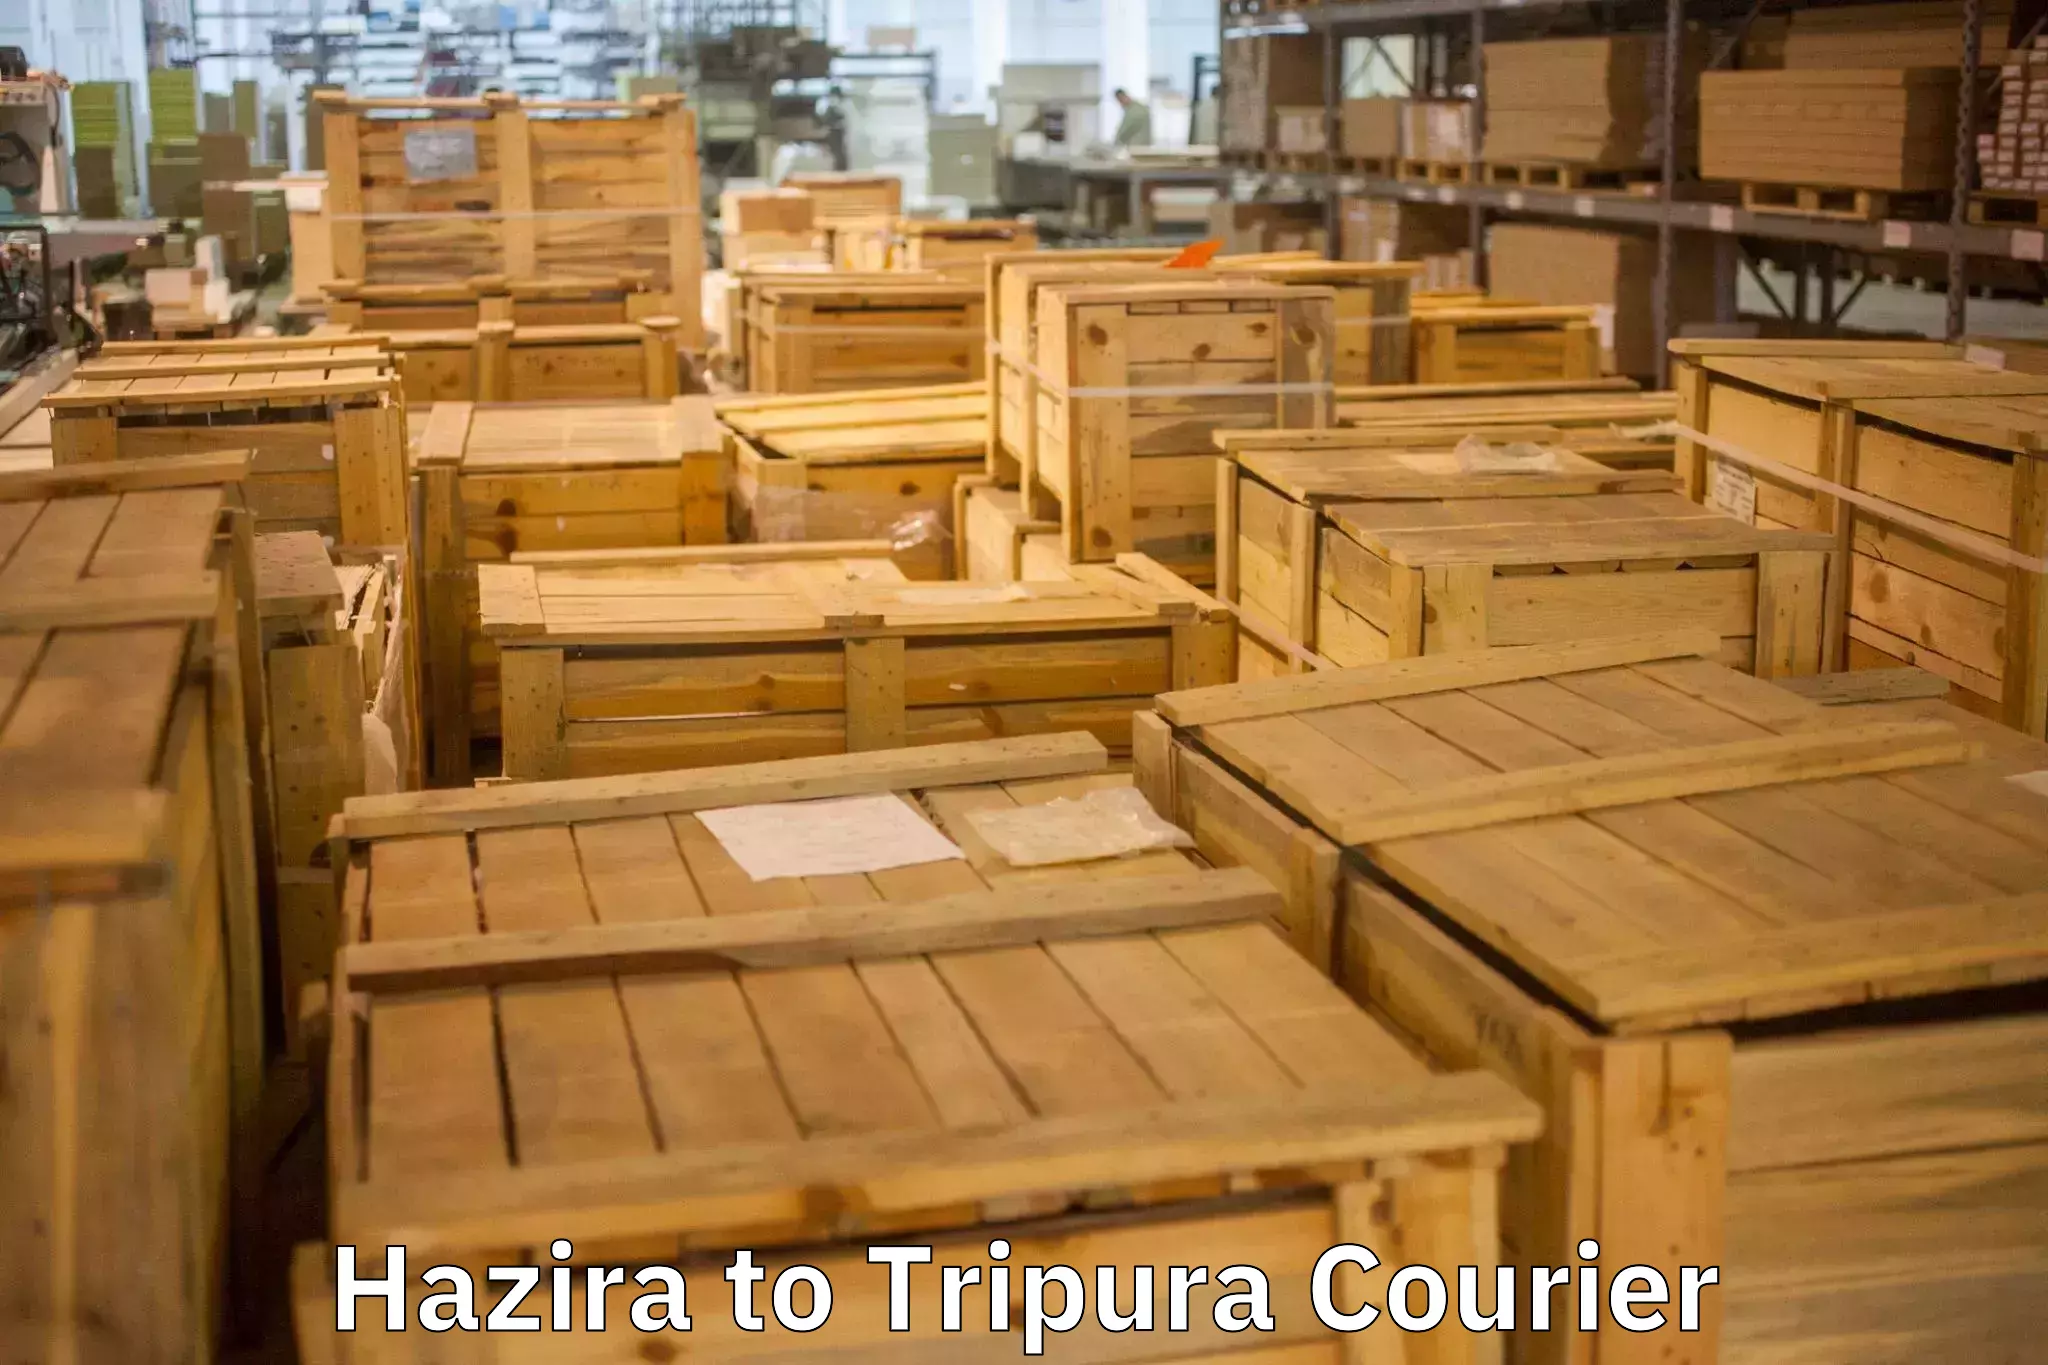 Comprehensive moving assistance Hazira to IIIT Agartala